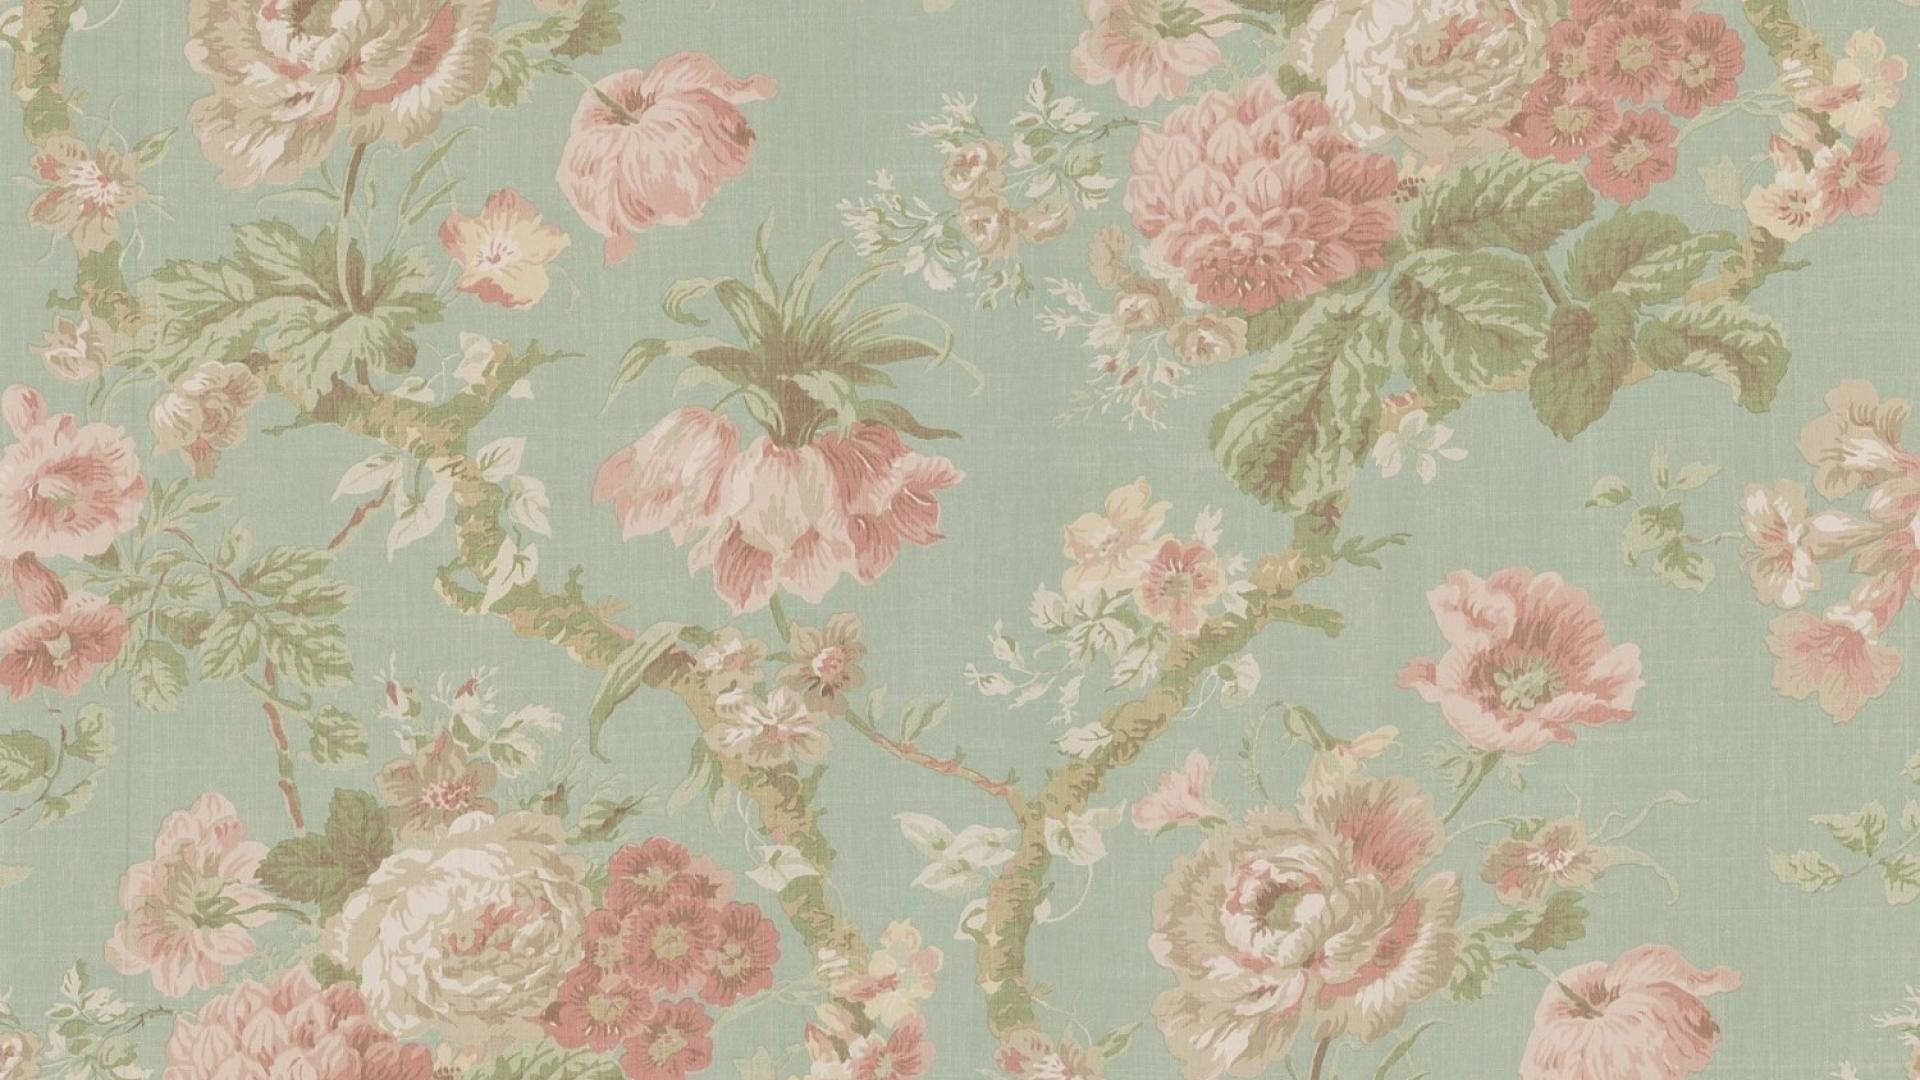 1920x1080 Hd Flower Antique Wallpaper